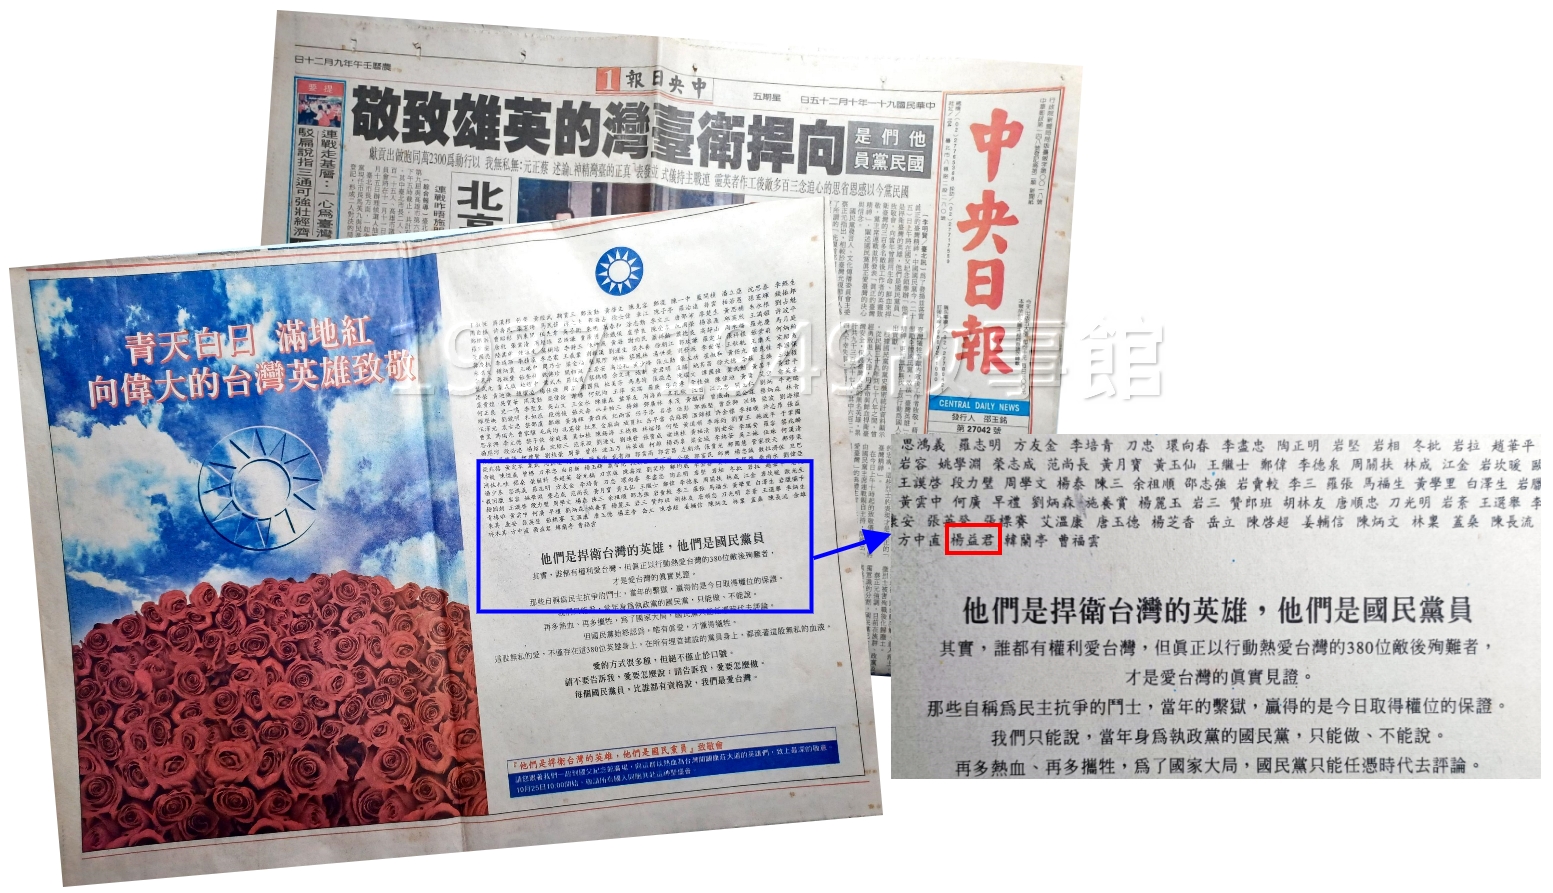 圖九　2002年10月25，國民黨正式公布380位為國殉難烈士名單，當中包含了「楊益君」。